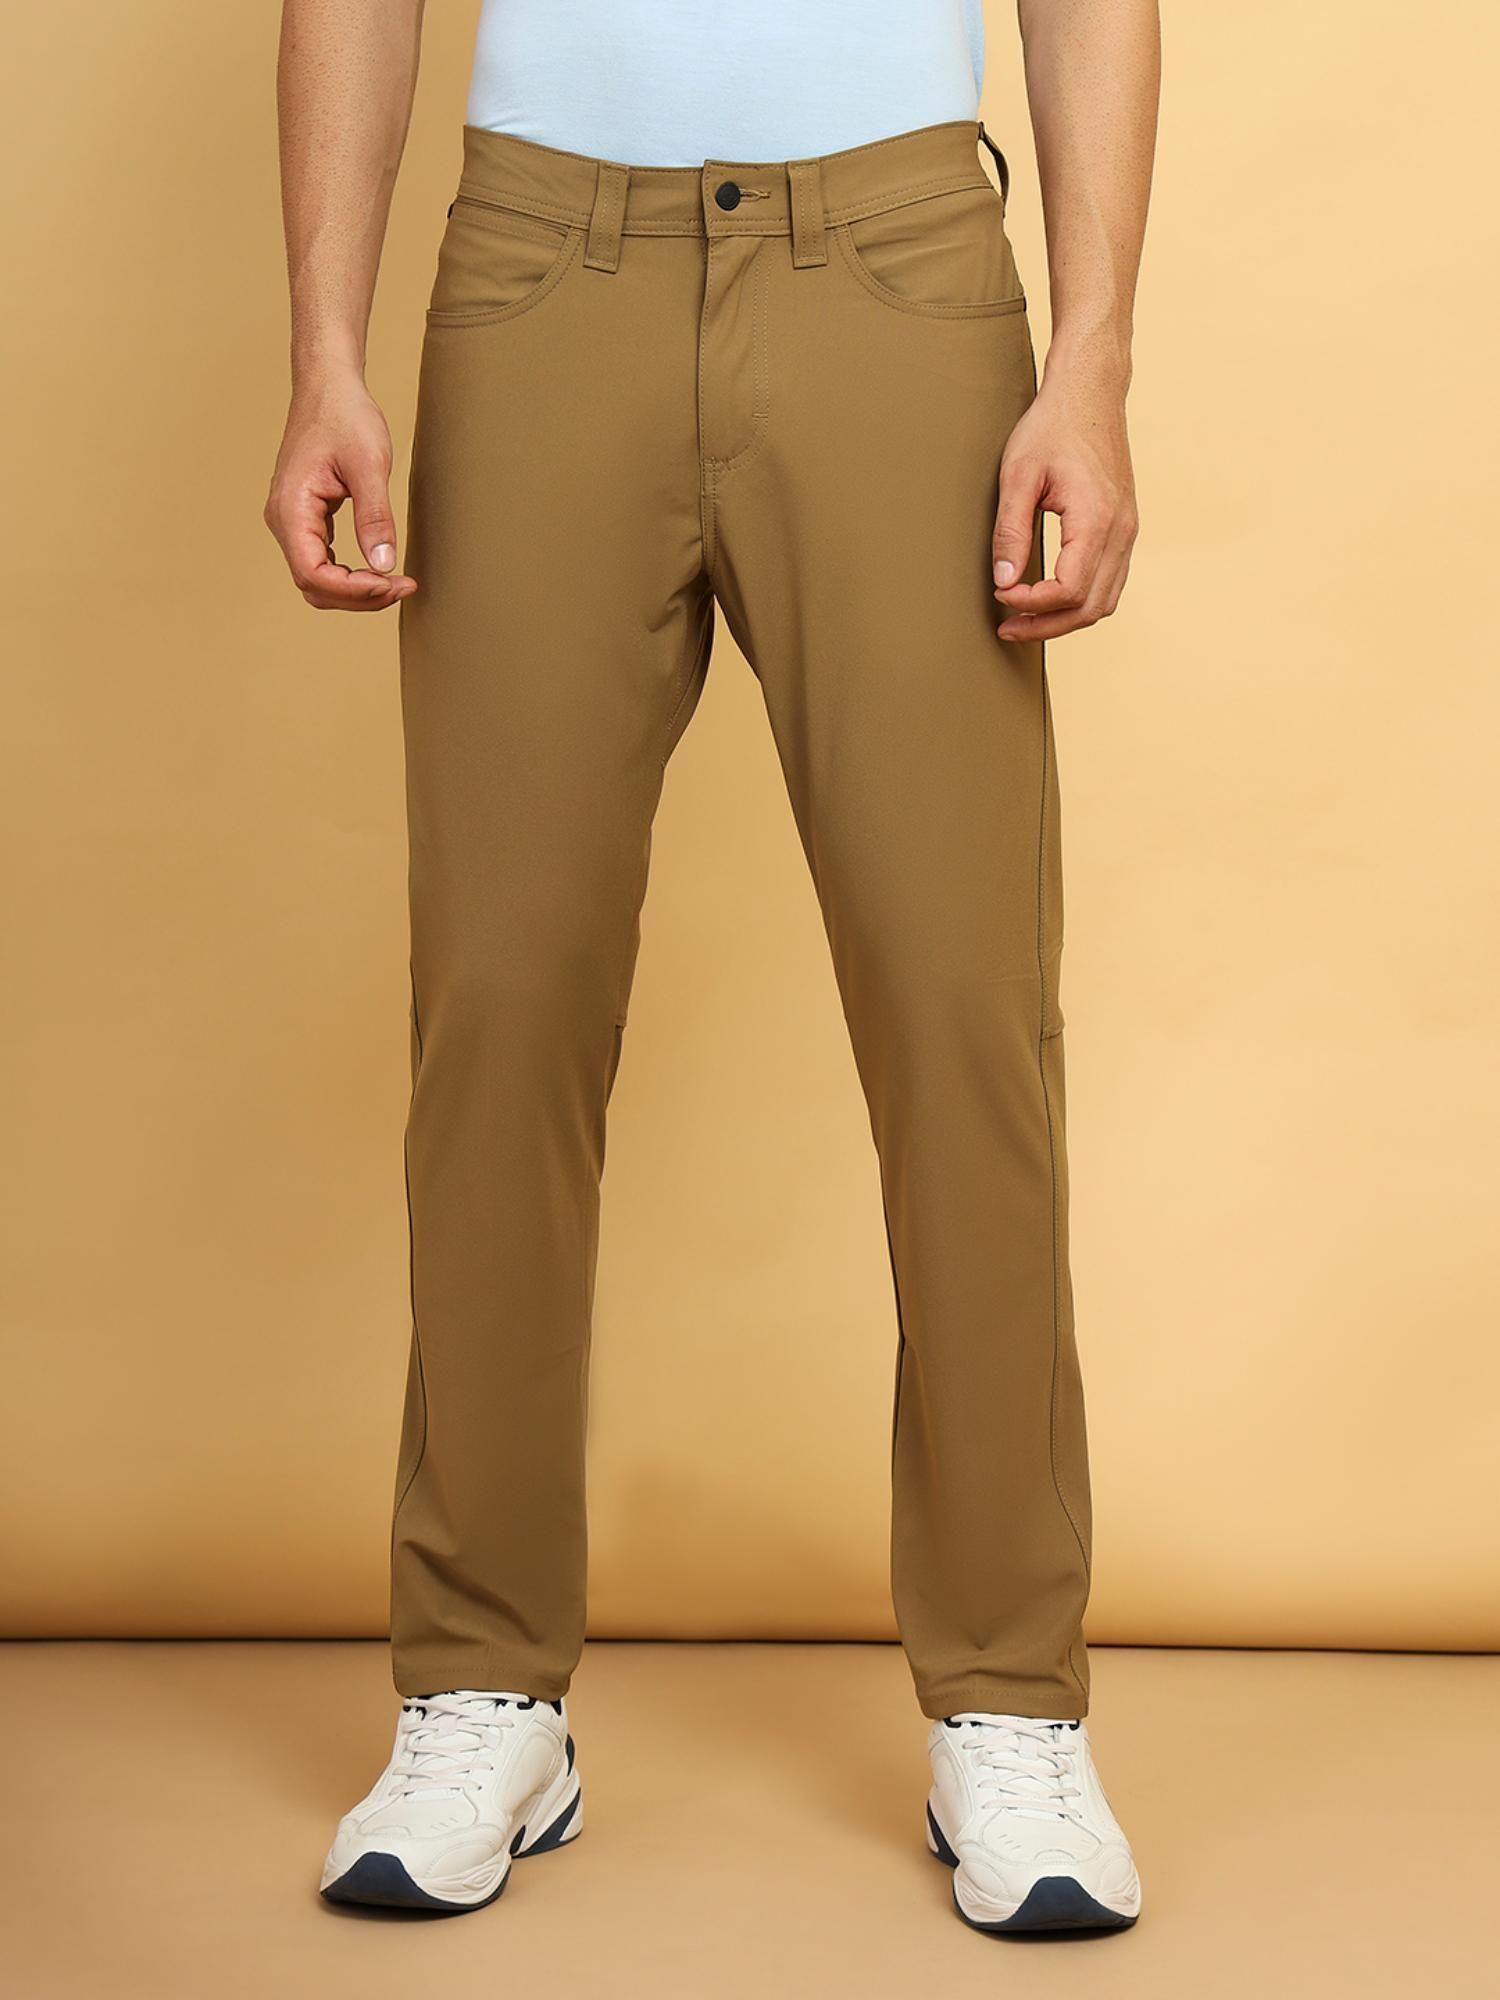 men's brown trousers